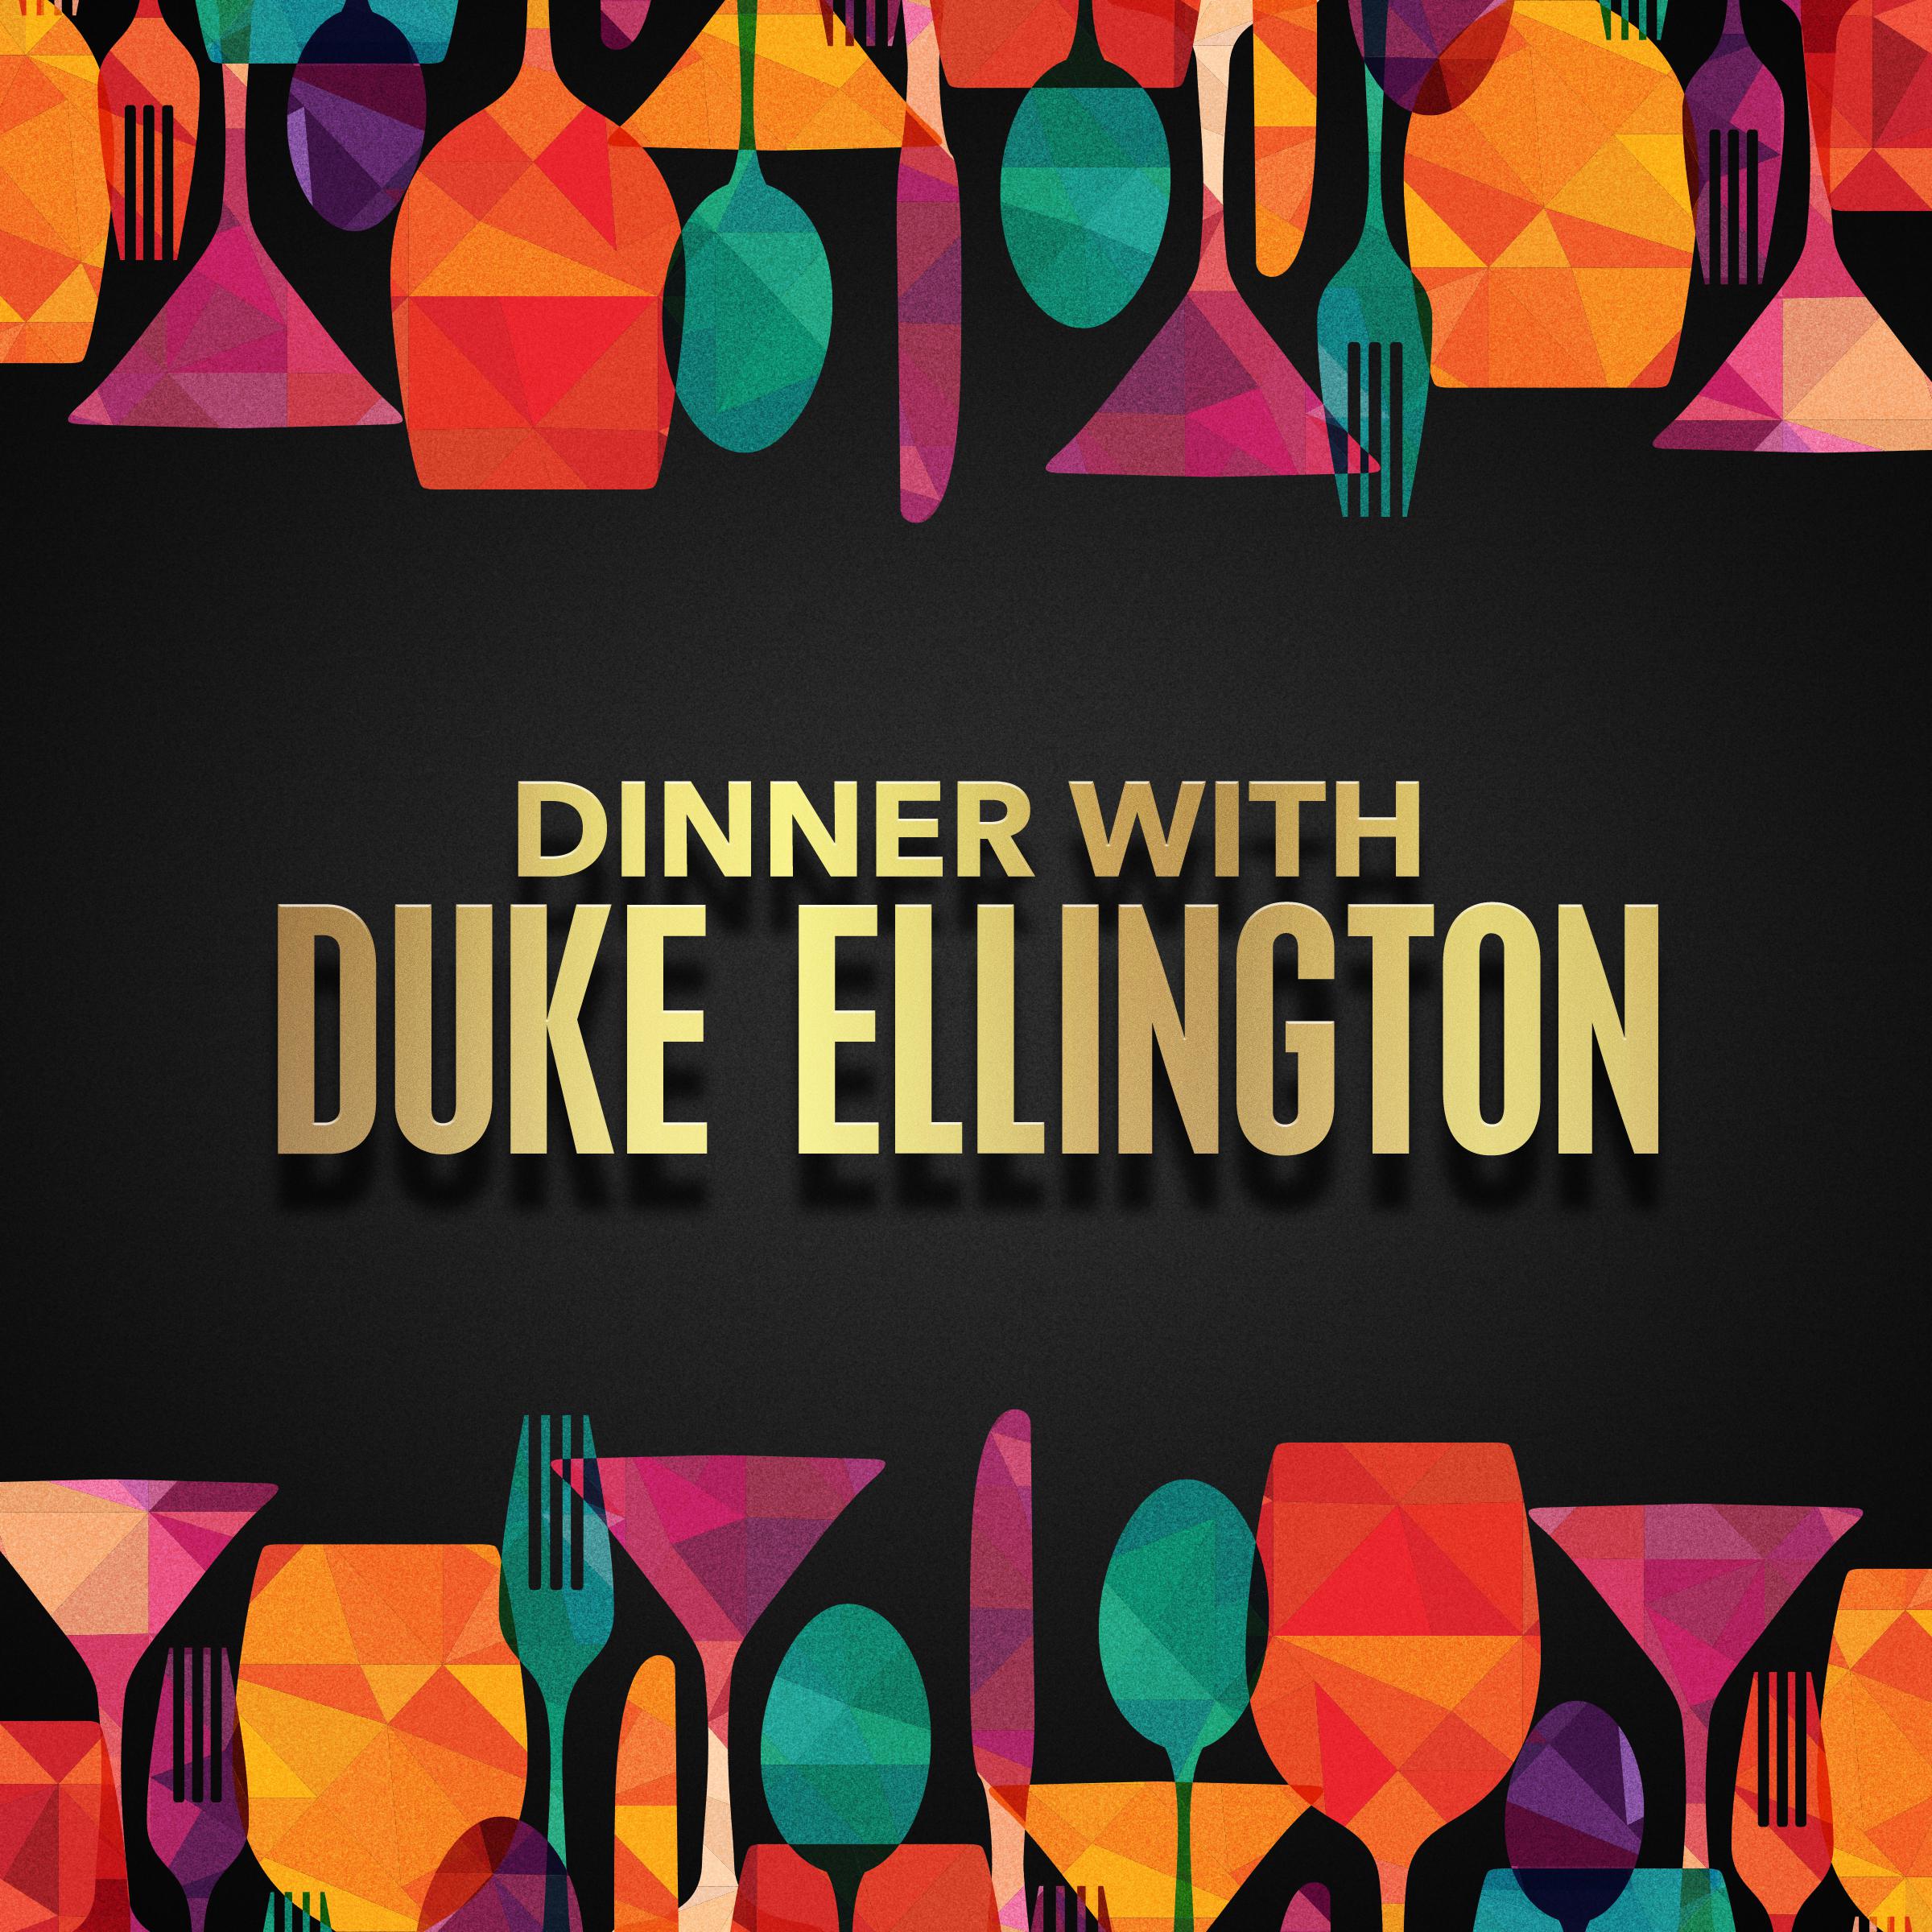 Dinner with Duke Ellington